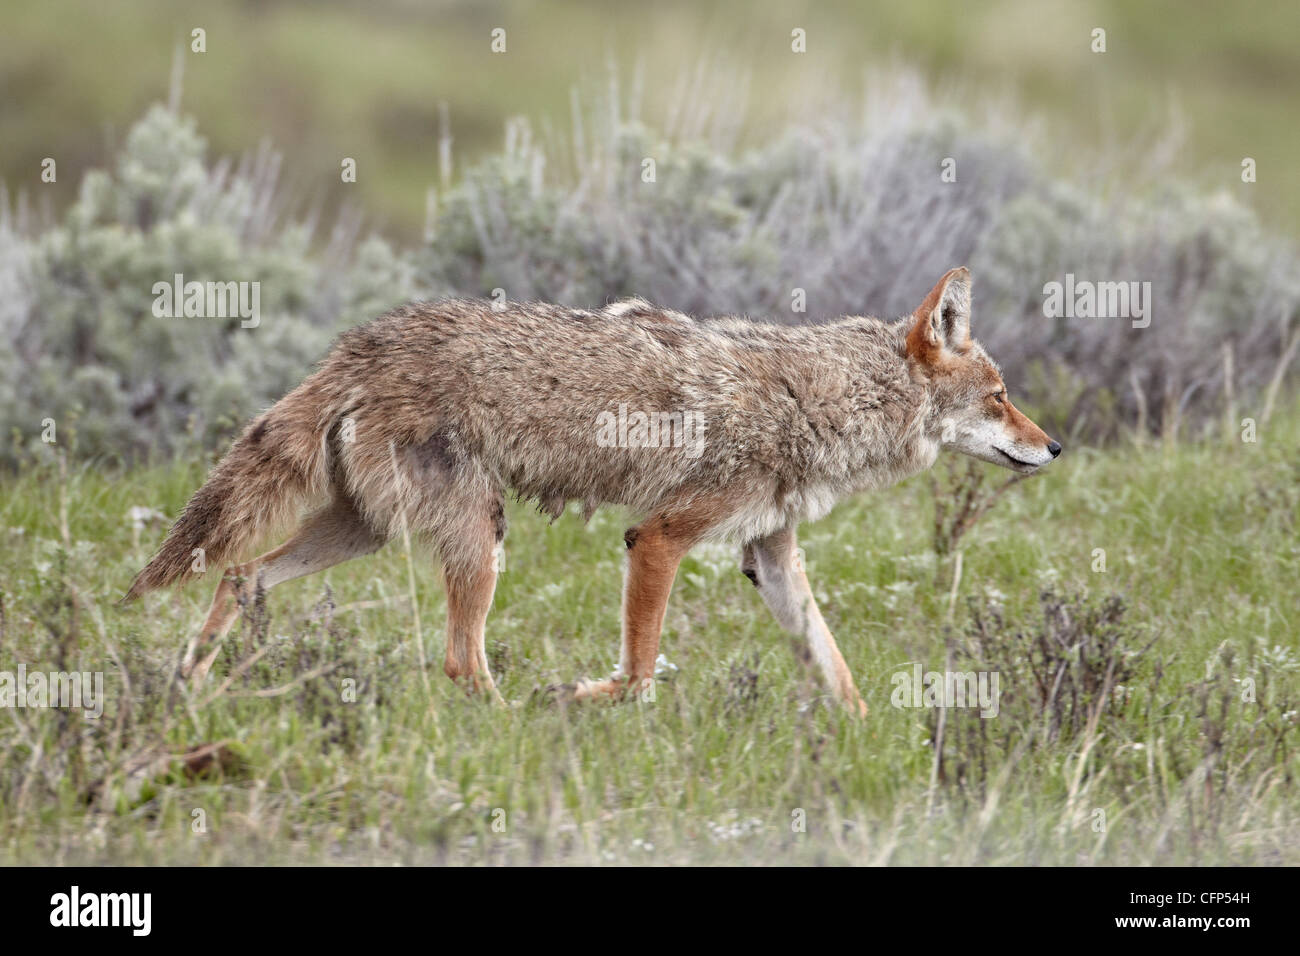 Le Coyote (Canis latrans), le Parc National de Yellowstone, UNESCO World Heritage Site, Wyoming, États-Unis d'Amérique, Amérique du Nord Banque D'Images